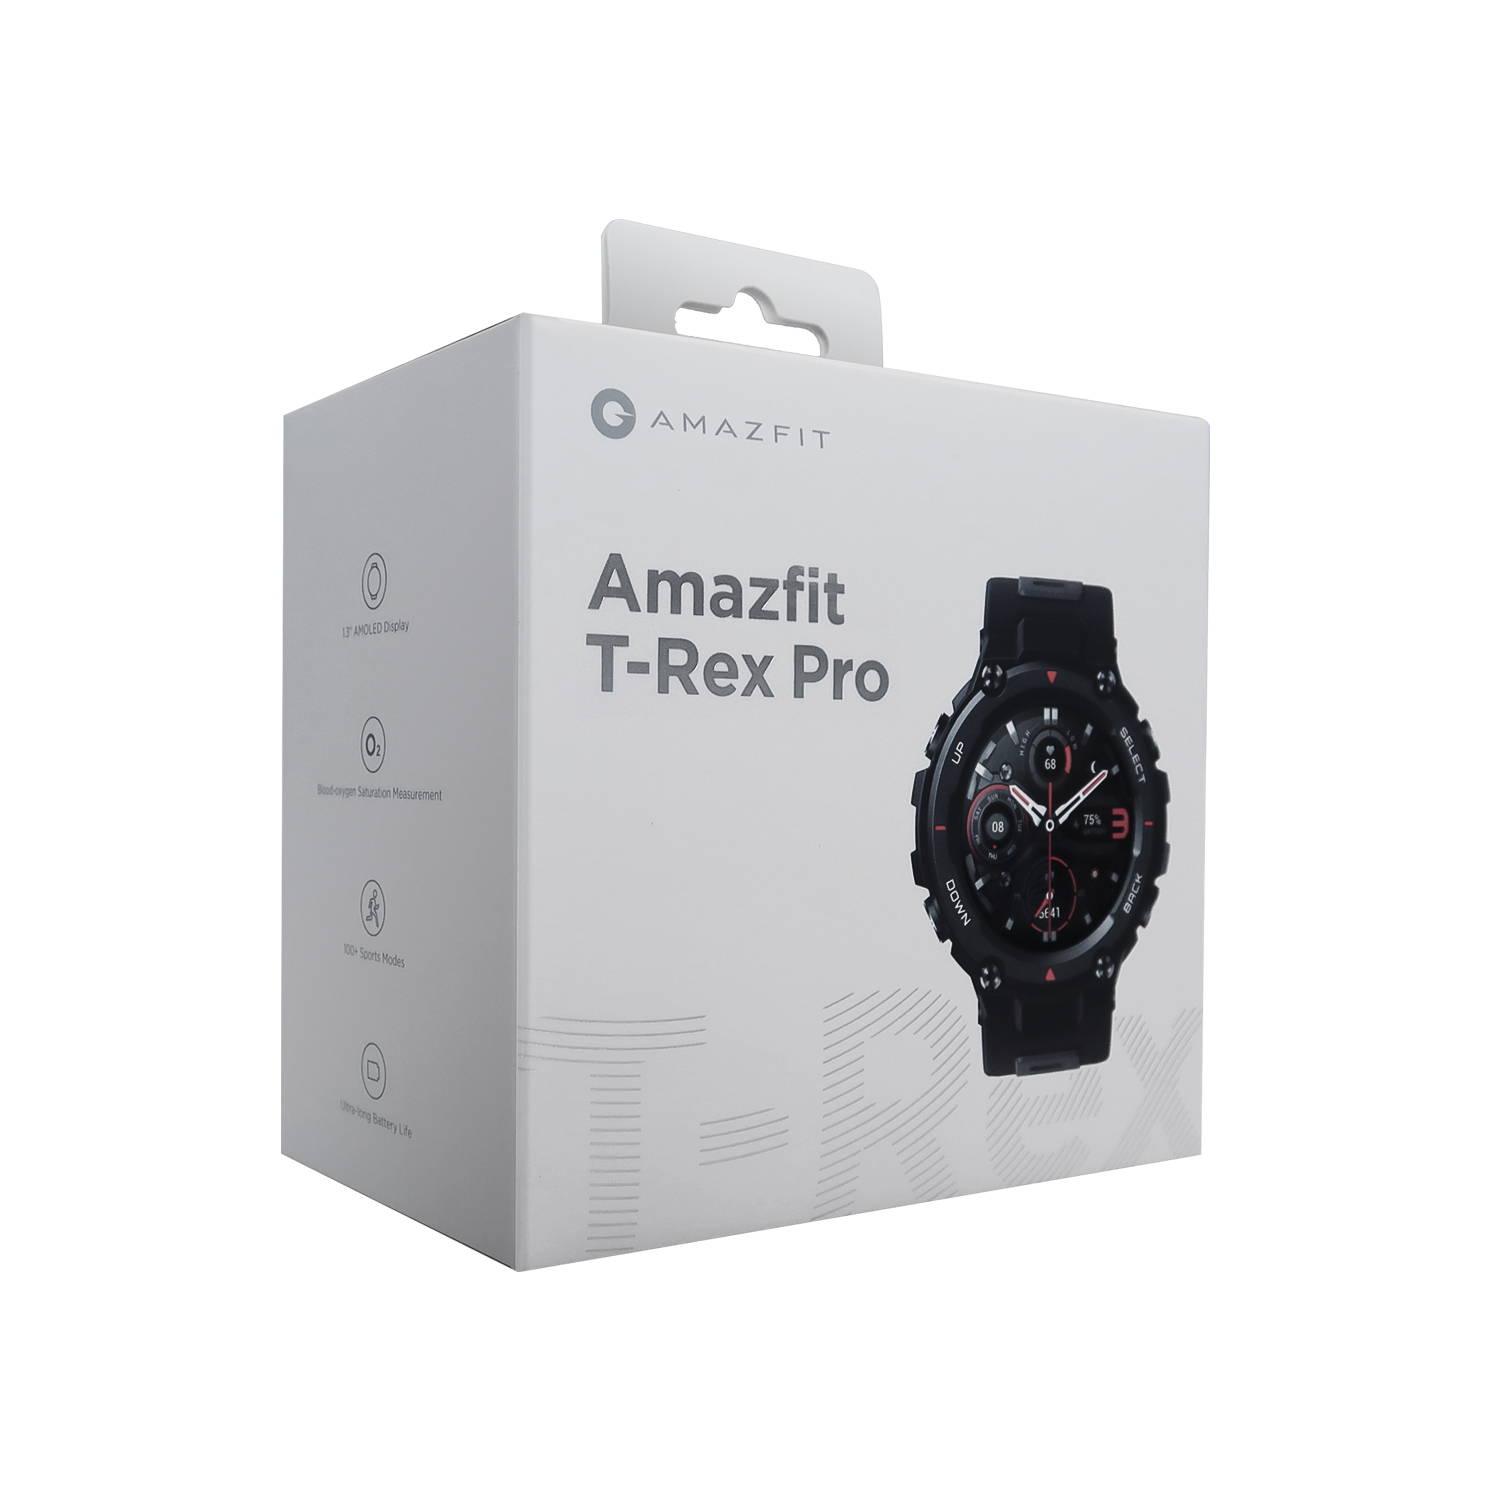 Amazfit T-Rex Pro: In pics